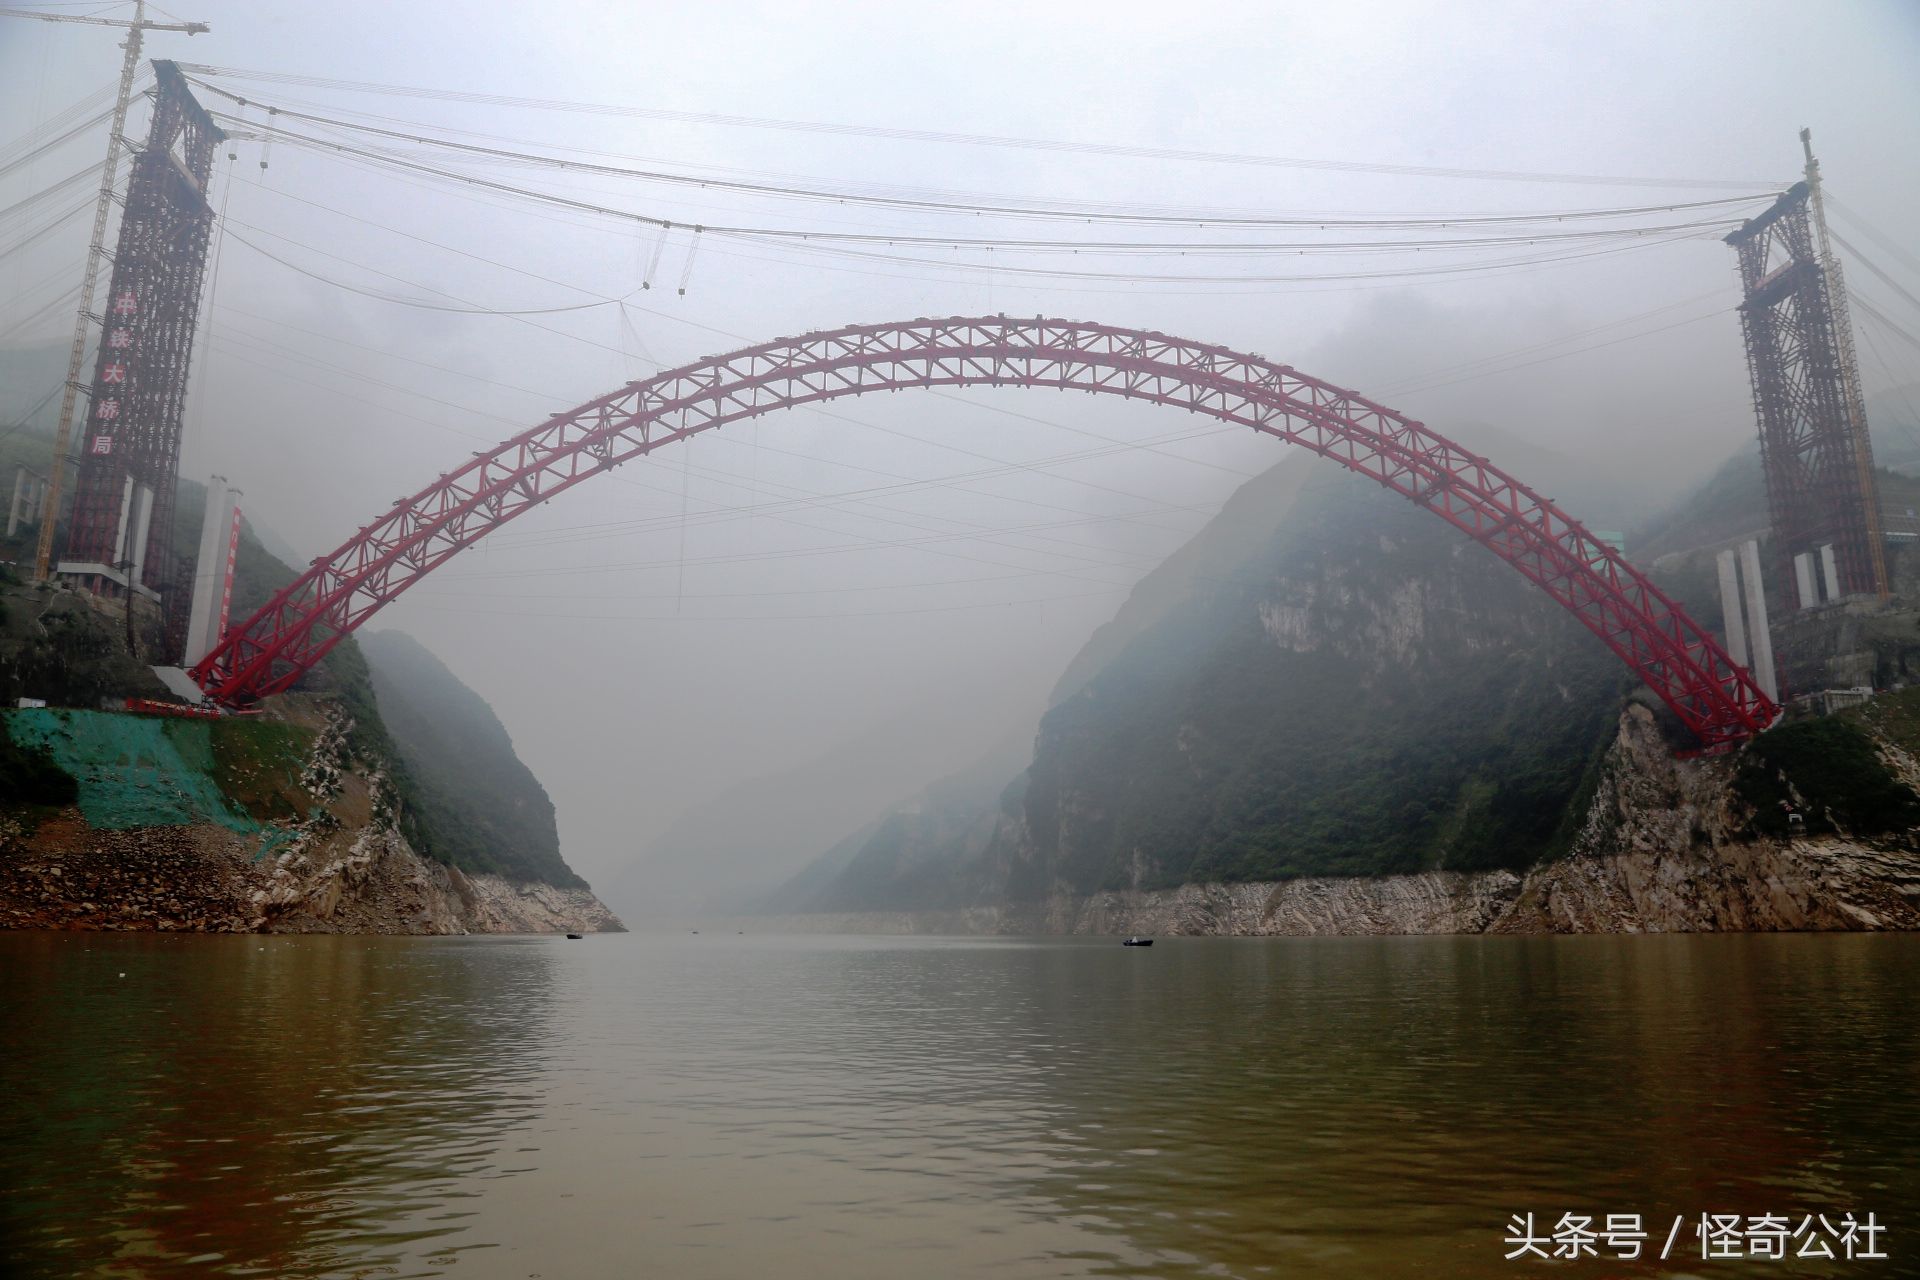 香溪长江公路大桥横跨秭归两岸,主桥72米,计划